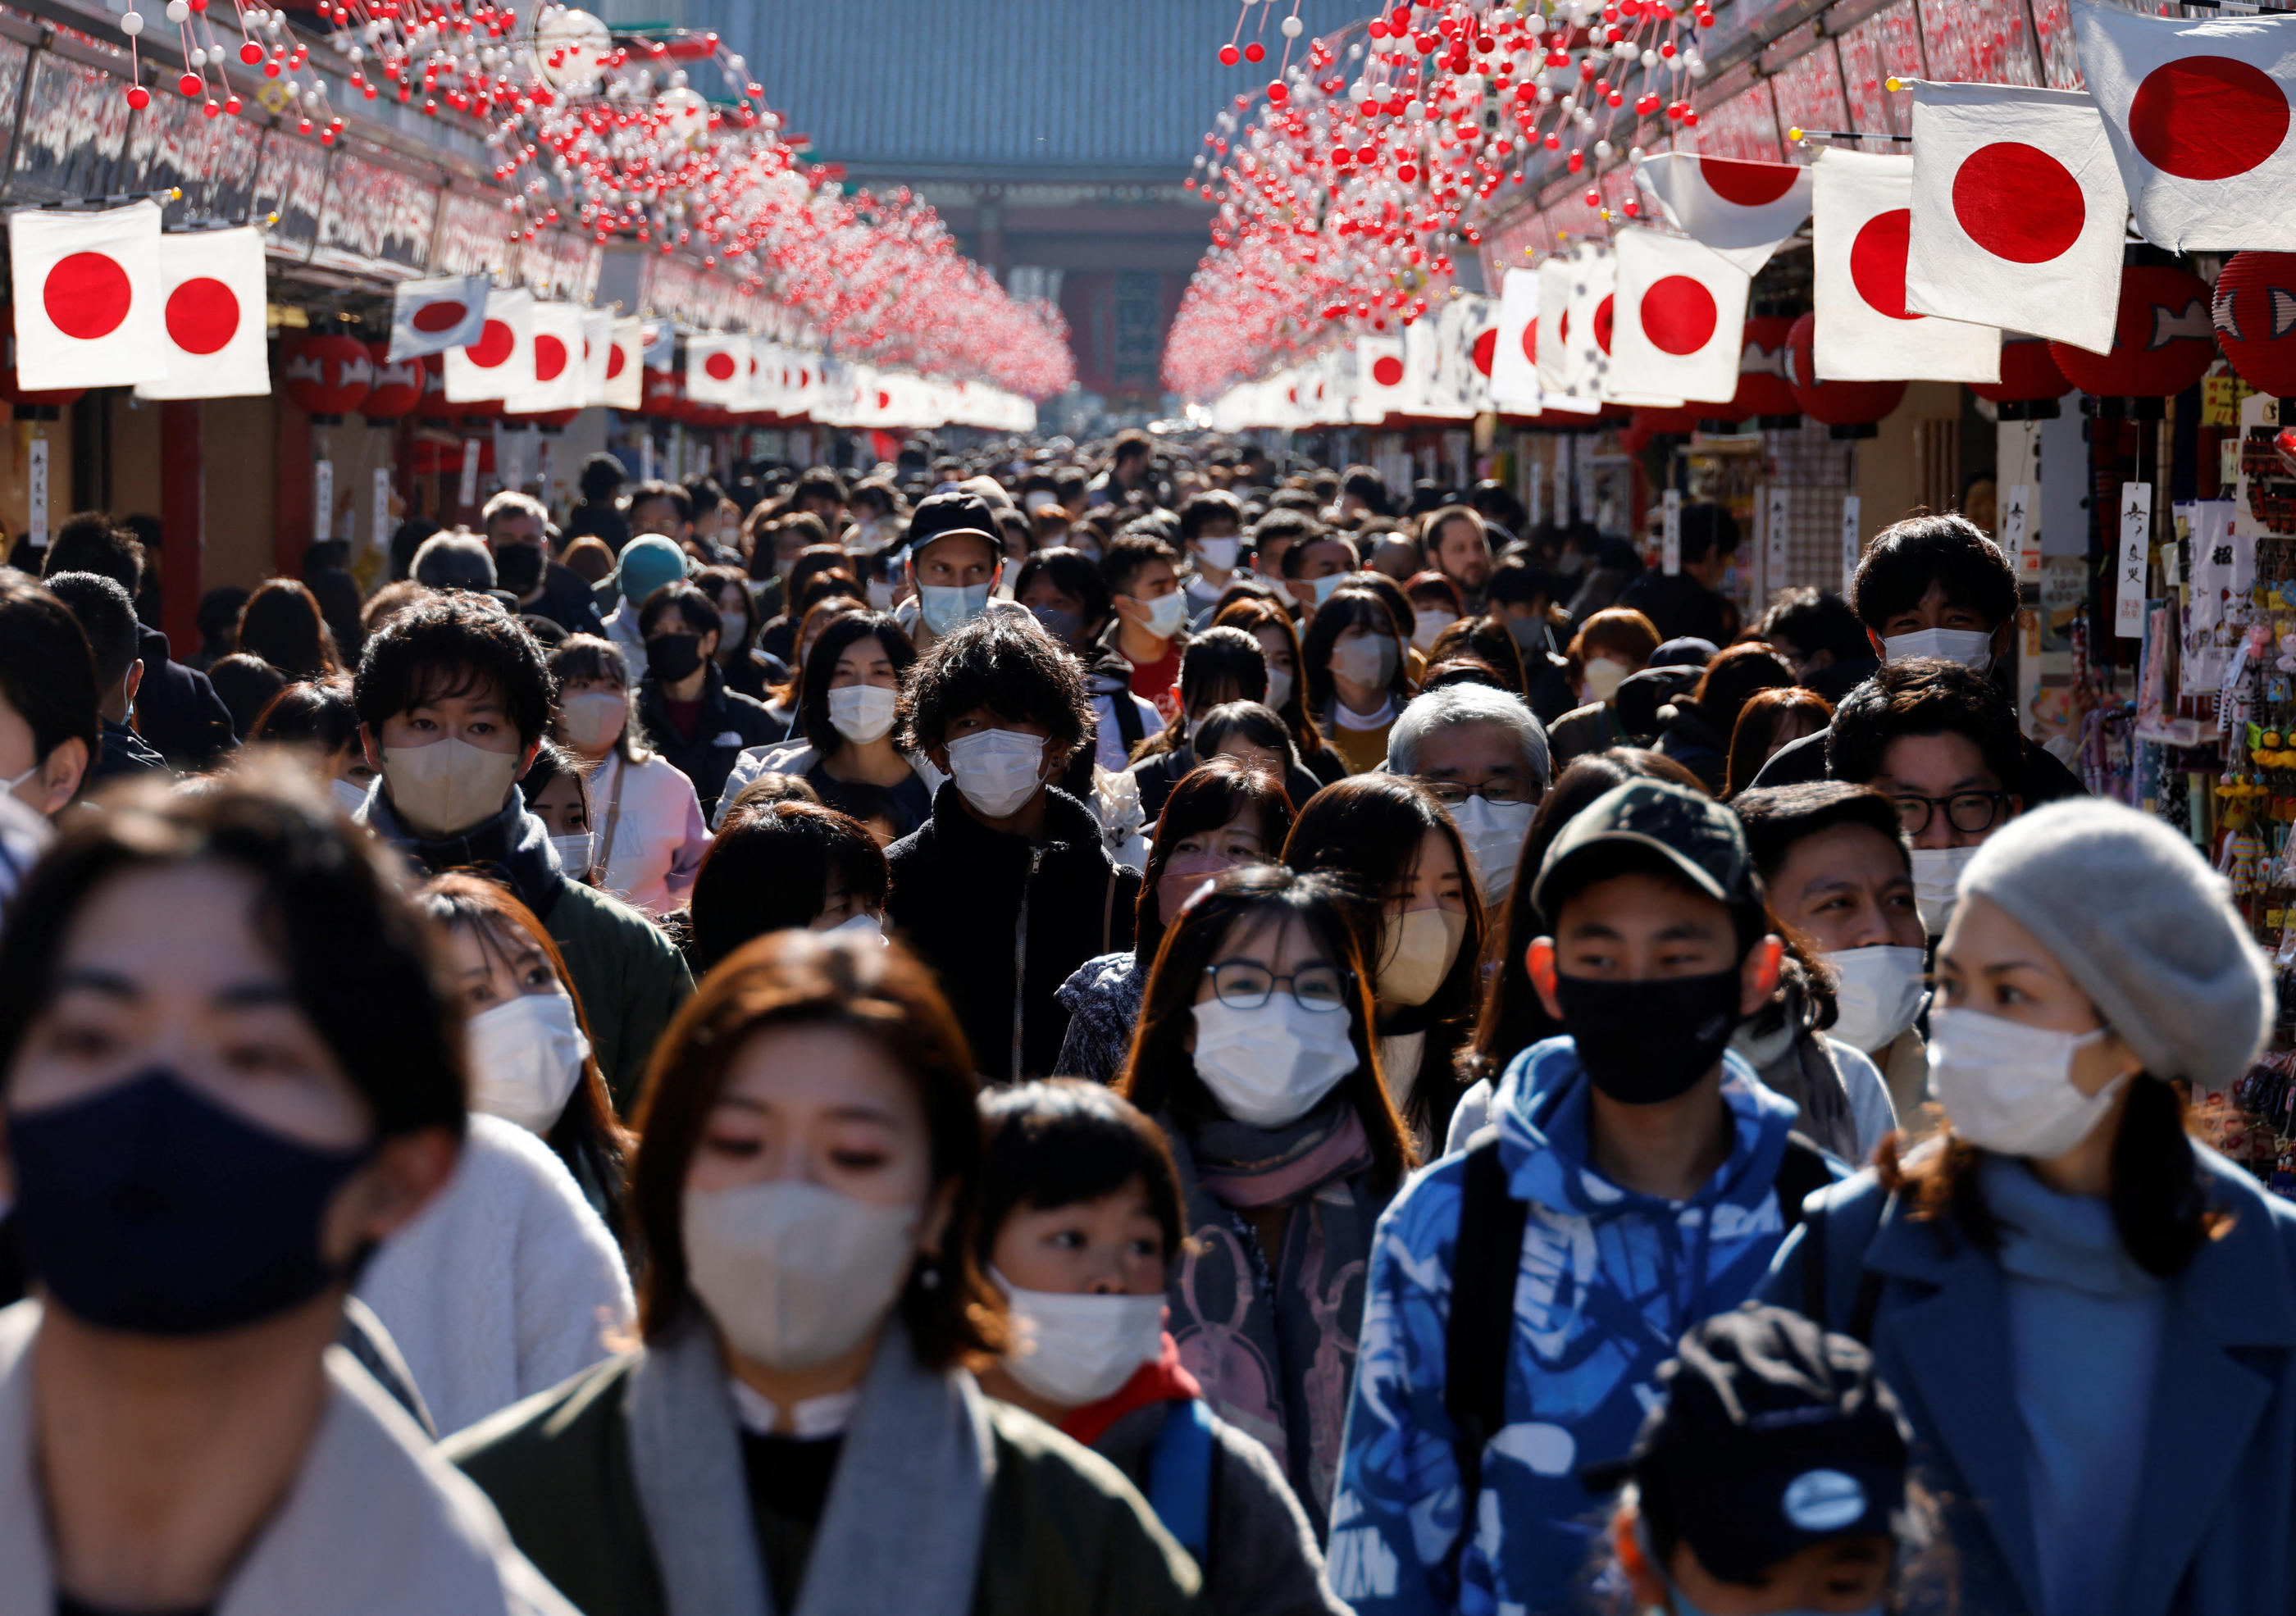 A Tokyo, le 9 janvier. Dans ce quartier touristique populaire, quasiment tous les passants portent le masque. REUTERS/Issei Kato